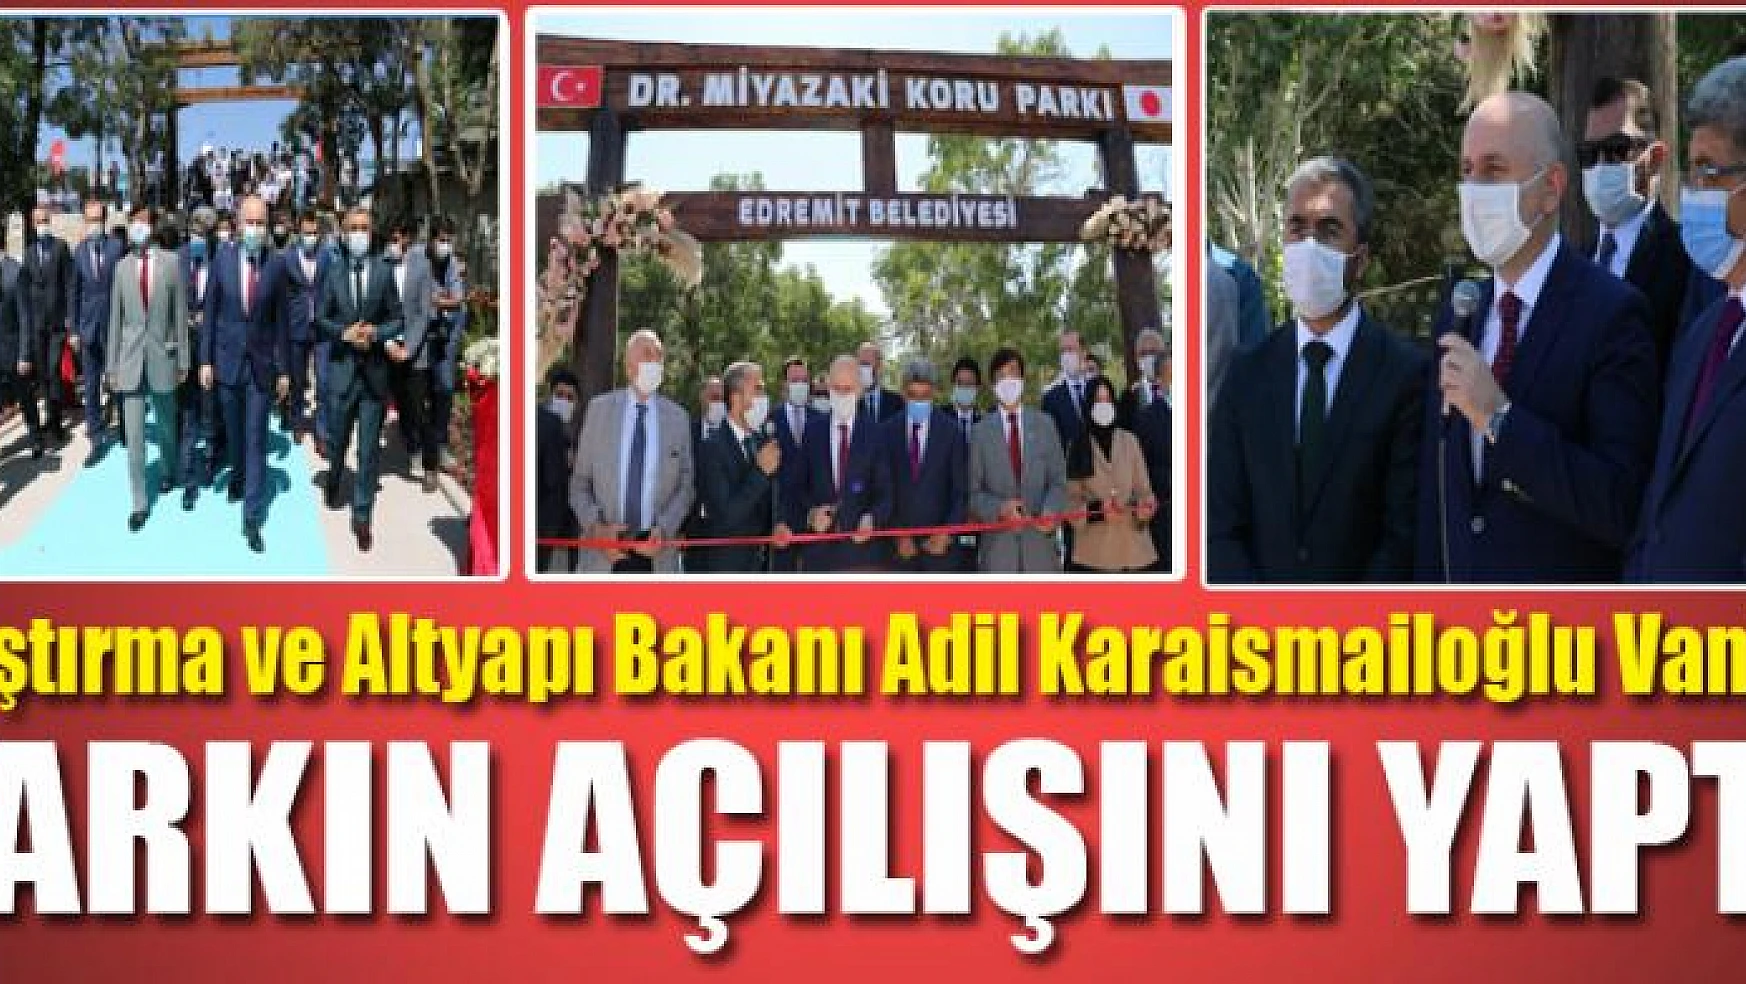 Bakanı Karaismailoğlu, Dr. Miyazaki Koru'nun isminin verildiği parkın açılışını yaptı